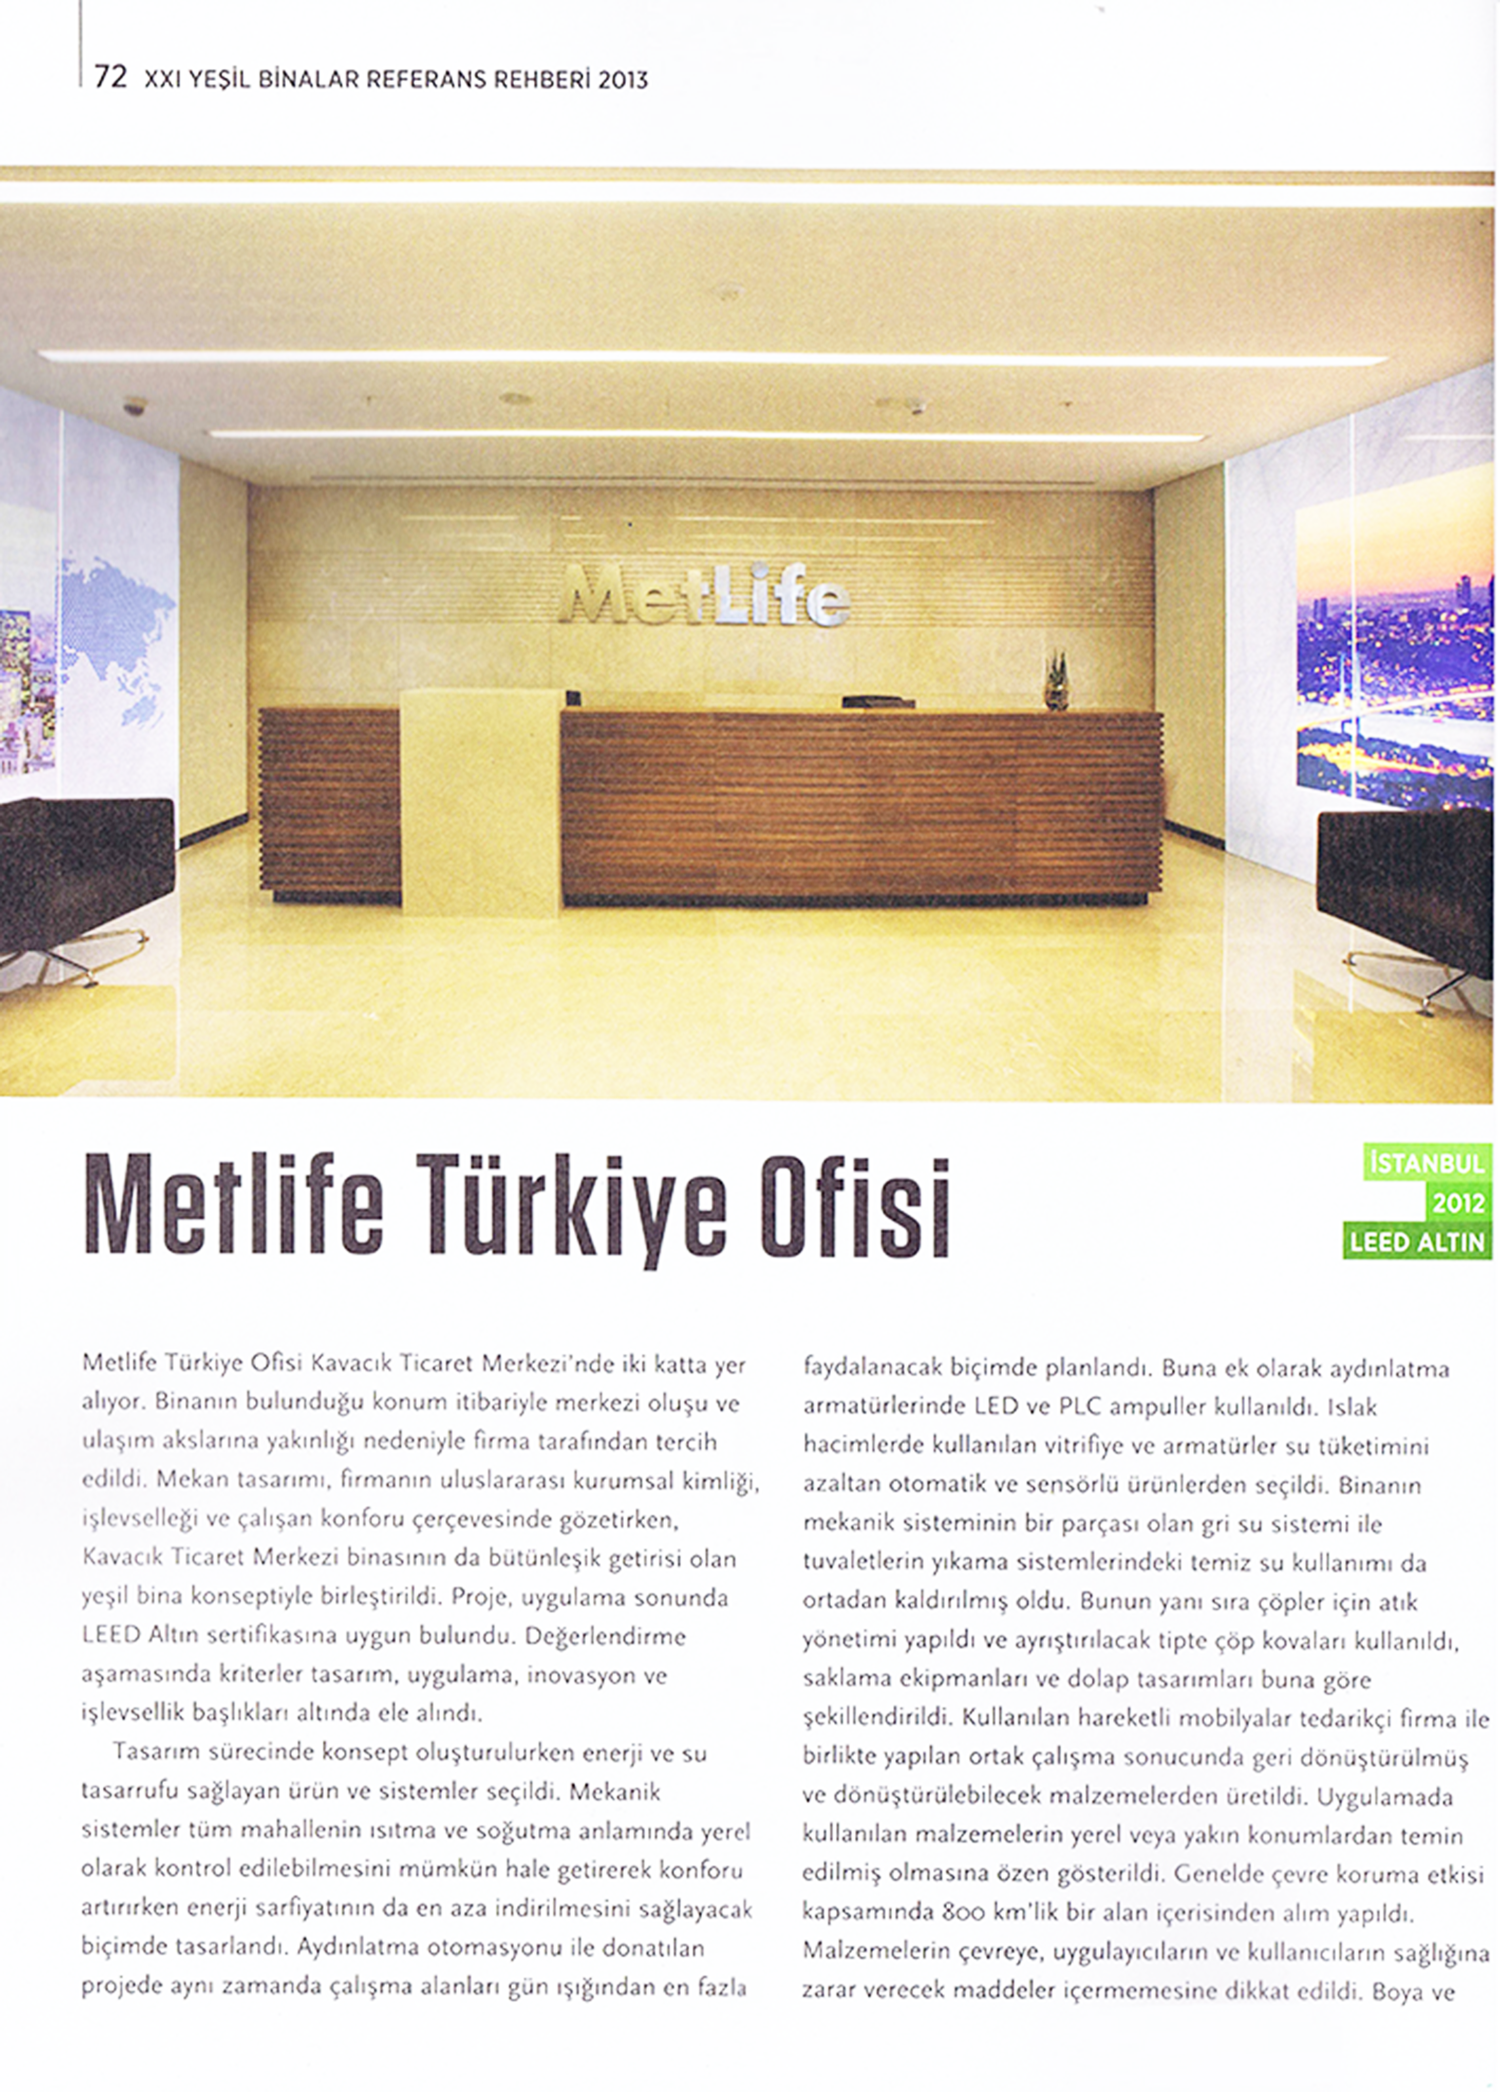 Metlife Turkey Office